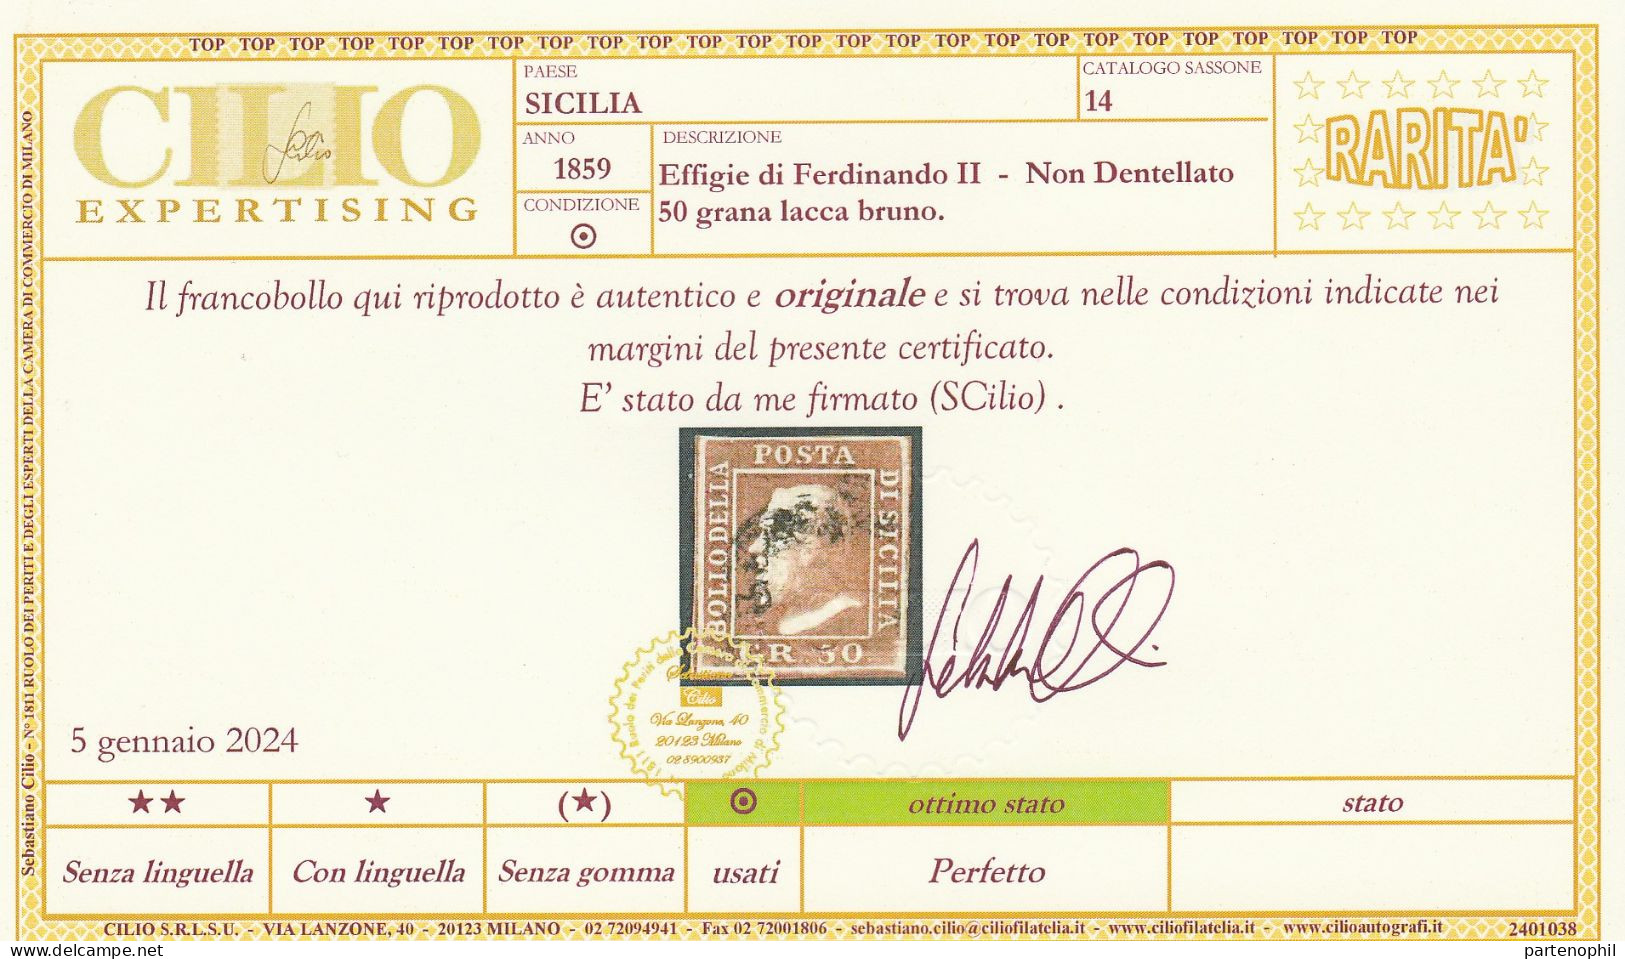 54 - Sicilia 1859 - 50 Gr. Lacca Bruno N. 14. Firmato E. E A. Diena, Oliva. Cert. Cilio. Cat. € 12000,00. Molto Bello, - Sicilië